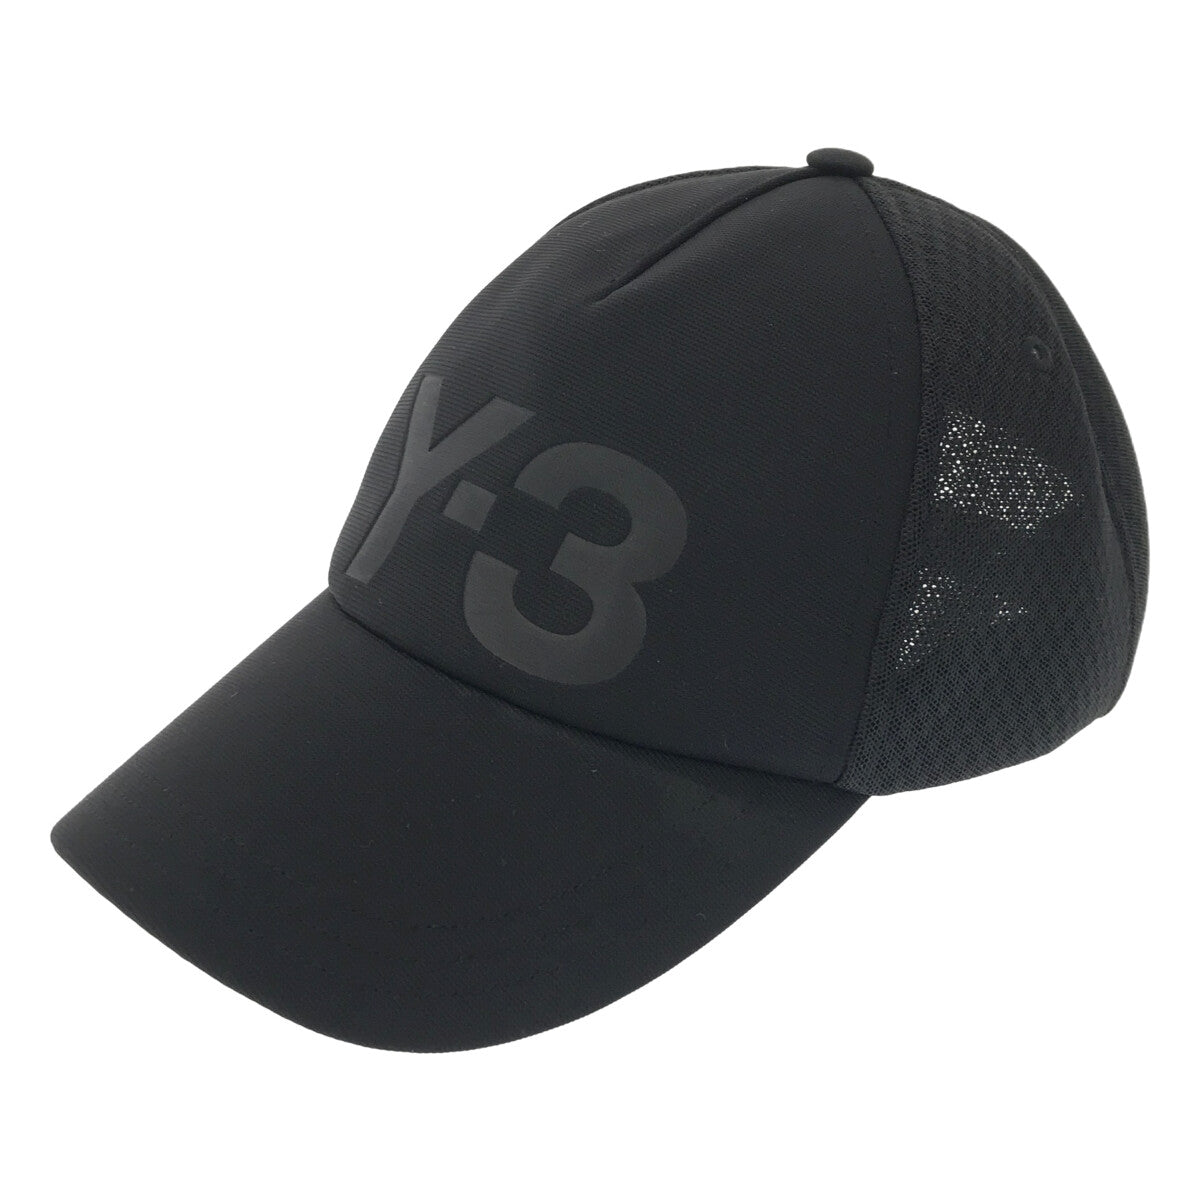 Y-3 / ワイスリー | TRUCKER CAP ロゴ トラッカーキャップ | ブラック | メンズ